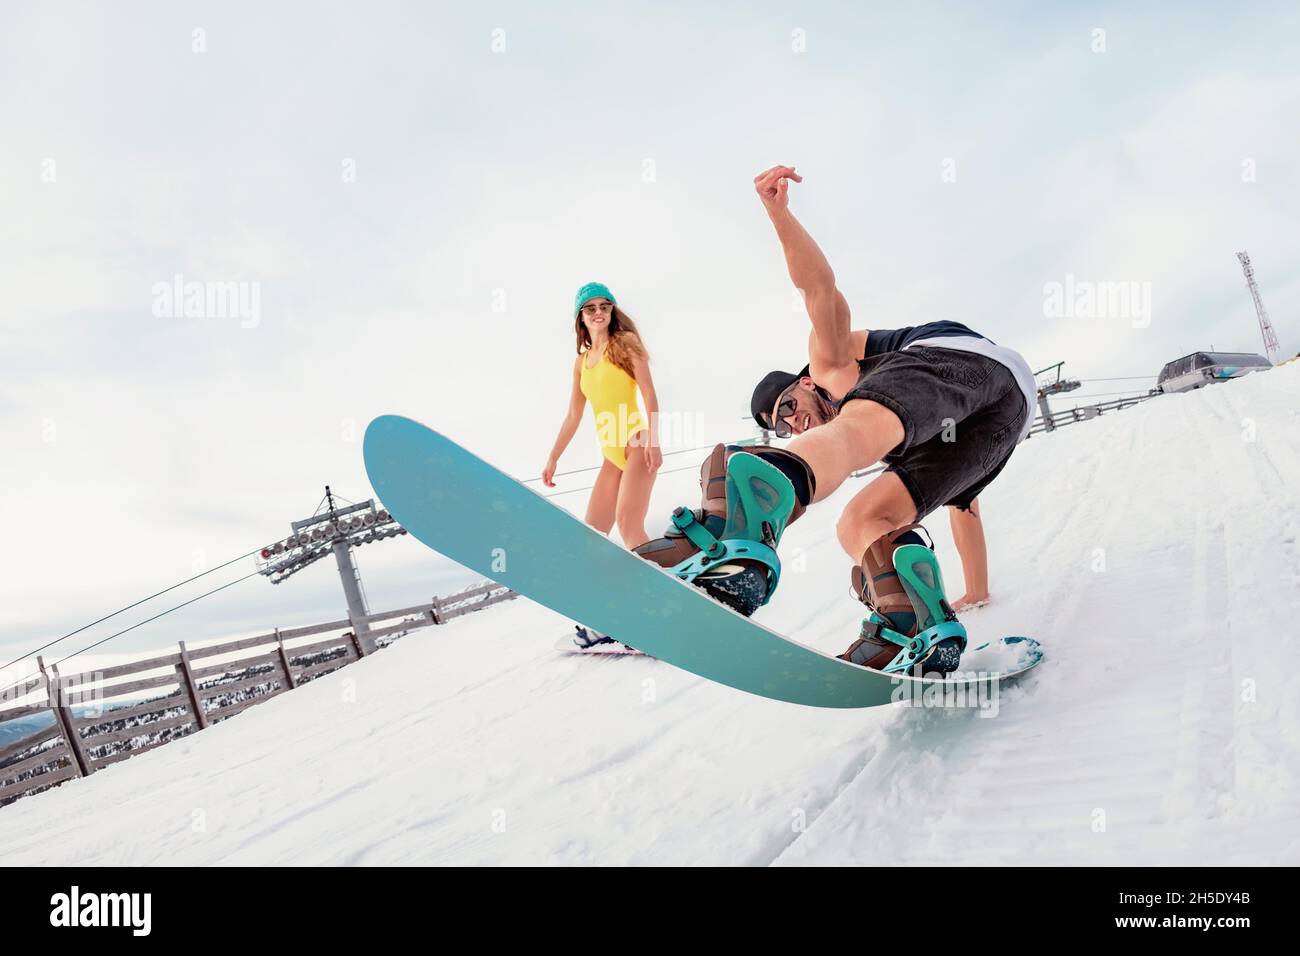 Junge Snowboarder haben Spaß im Skigebiet. Konzept für Winterferien Stockfoto